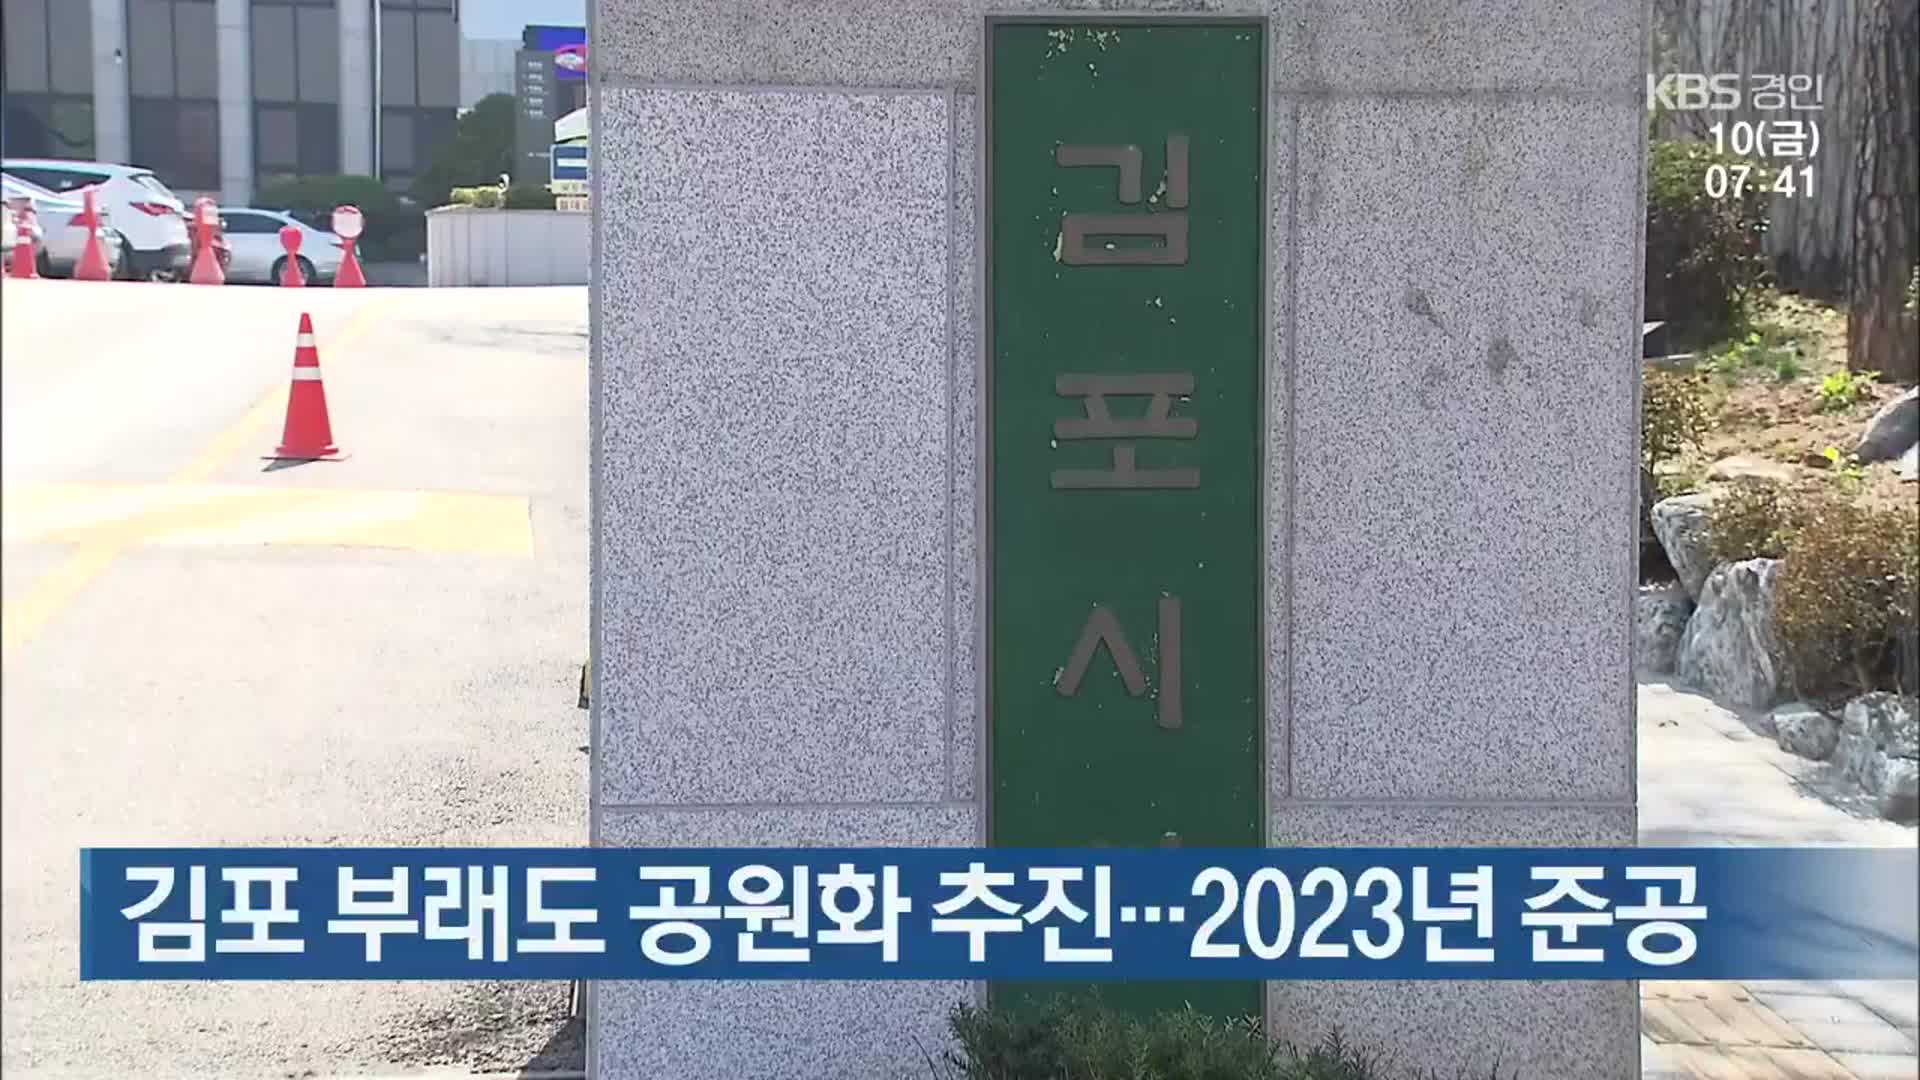 김포 부래도 공원화 추진…2023년 준공